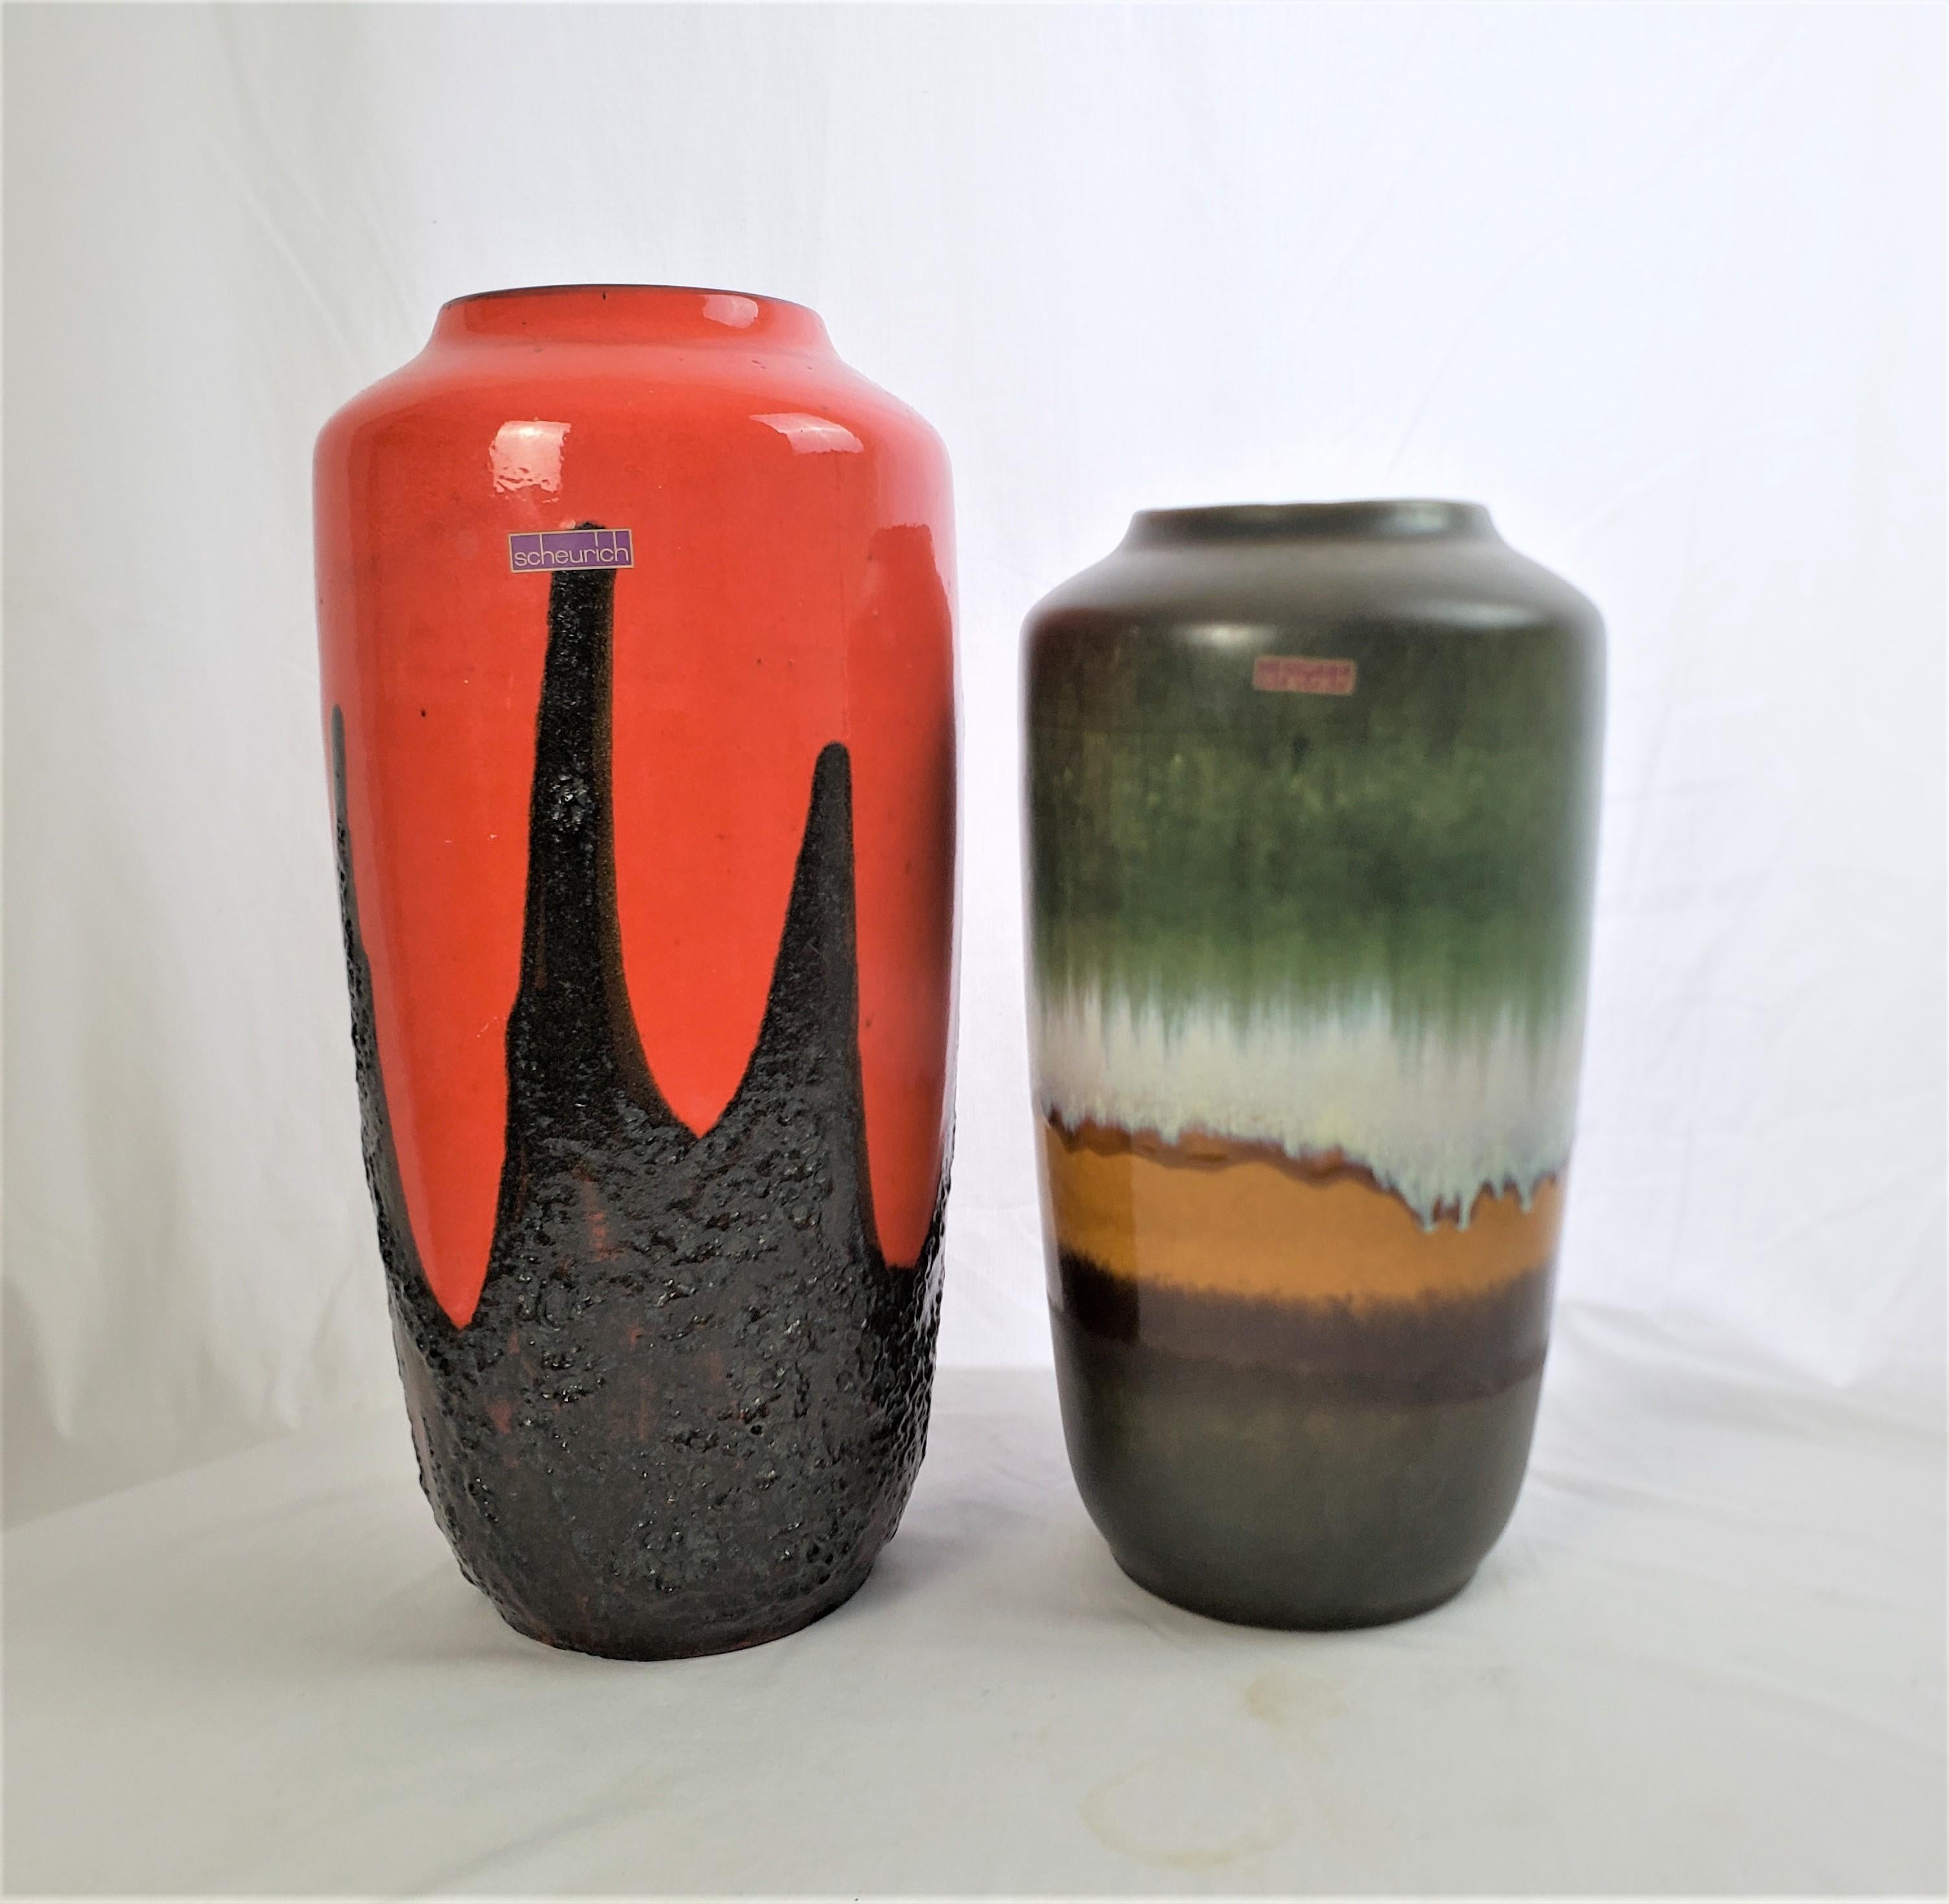 Cette paire de grands vases a été fabriquée par l'usine Scheurich d'Allemagne de l'Ouest vers 1965, dans le style moderne du milieu du siècle. Les vases sont composés de céramique moulée, avec une glaçure peinte à la main. Le plus grand vase est